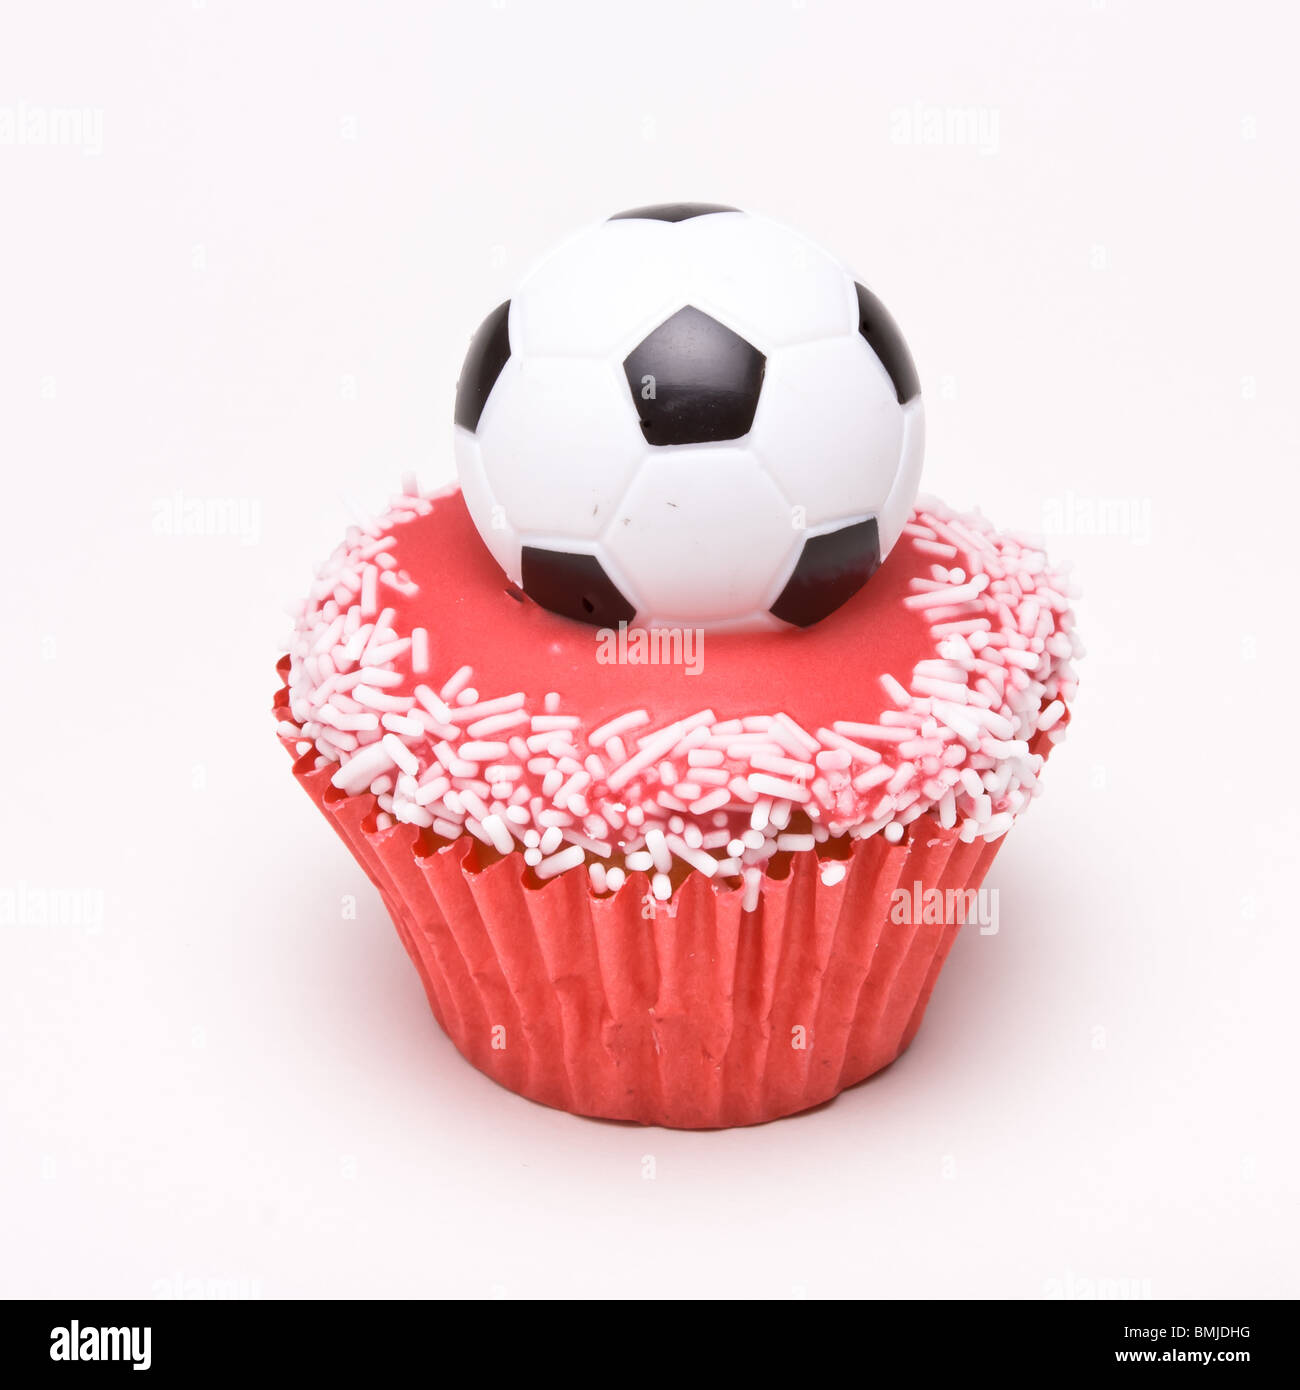 Soccer Cup Cake nei colori dell'Inghilterra di colore rosso e bianco per i tifosi di calcio. Foto Stock